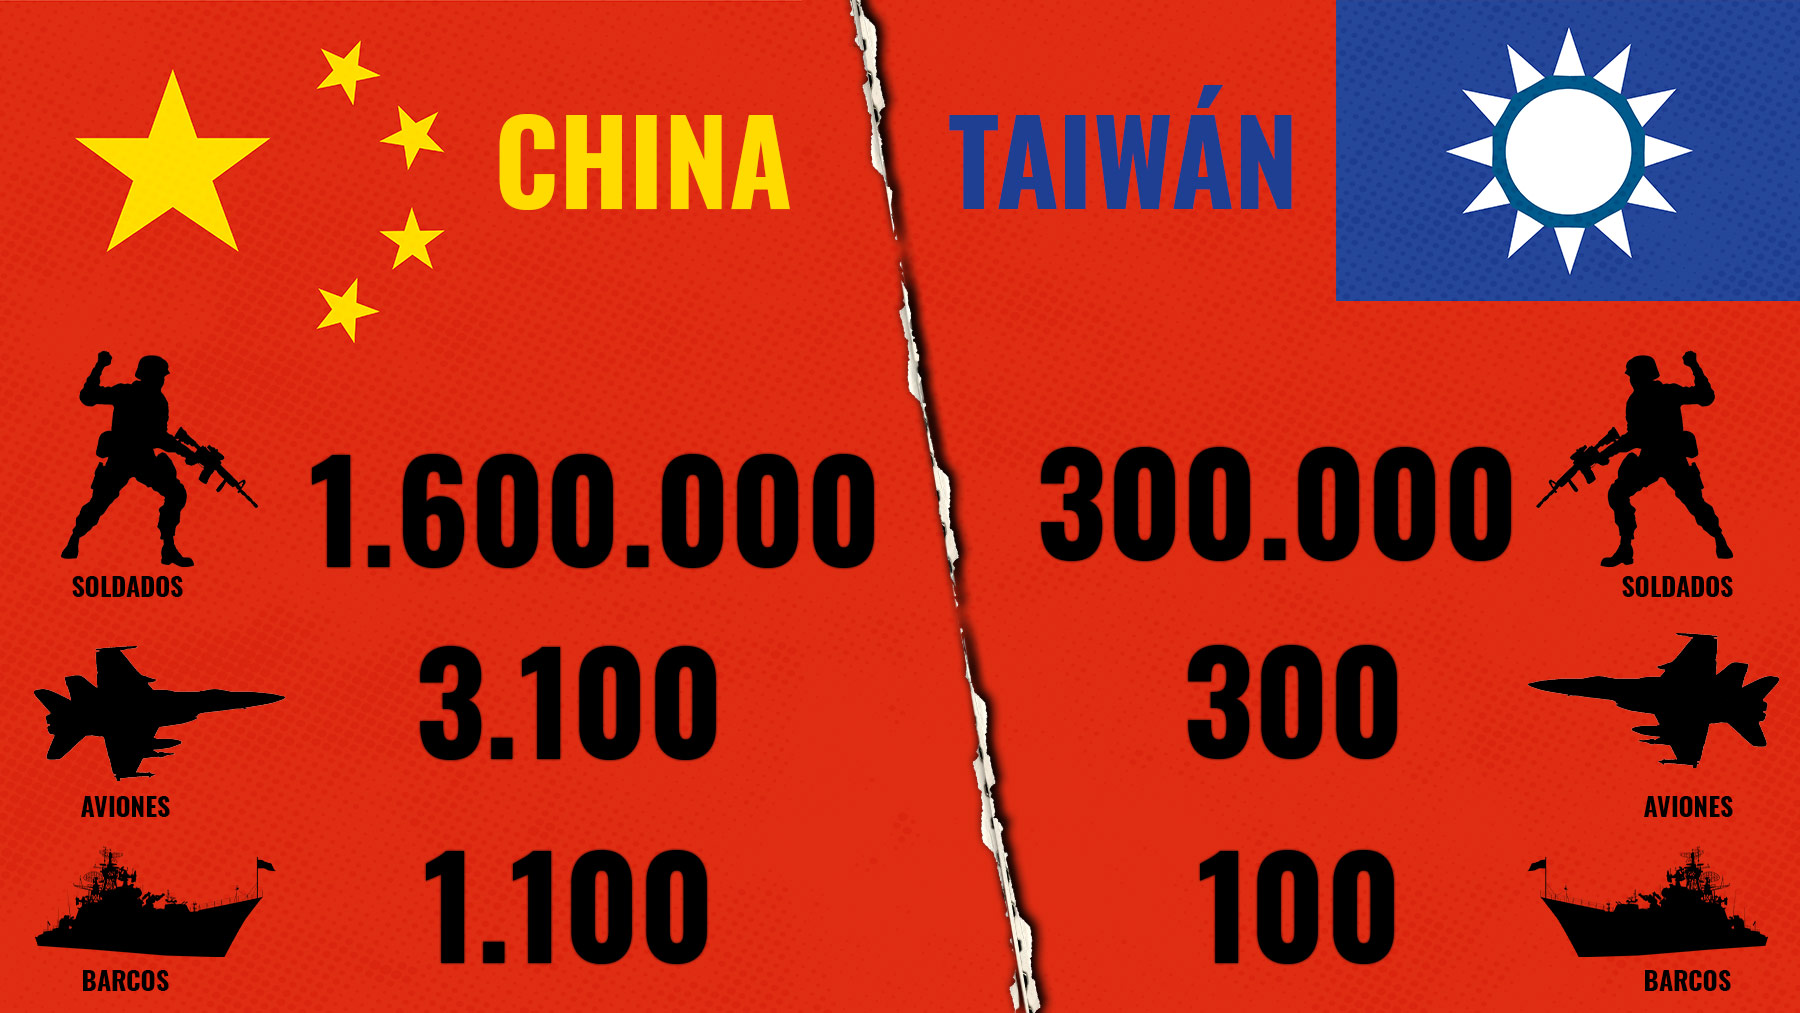 Las diferencias entre el ejército chino y el de Taiwán.